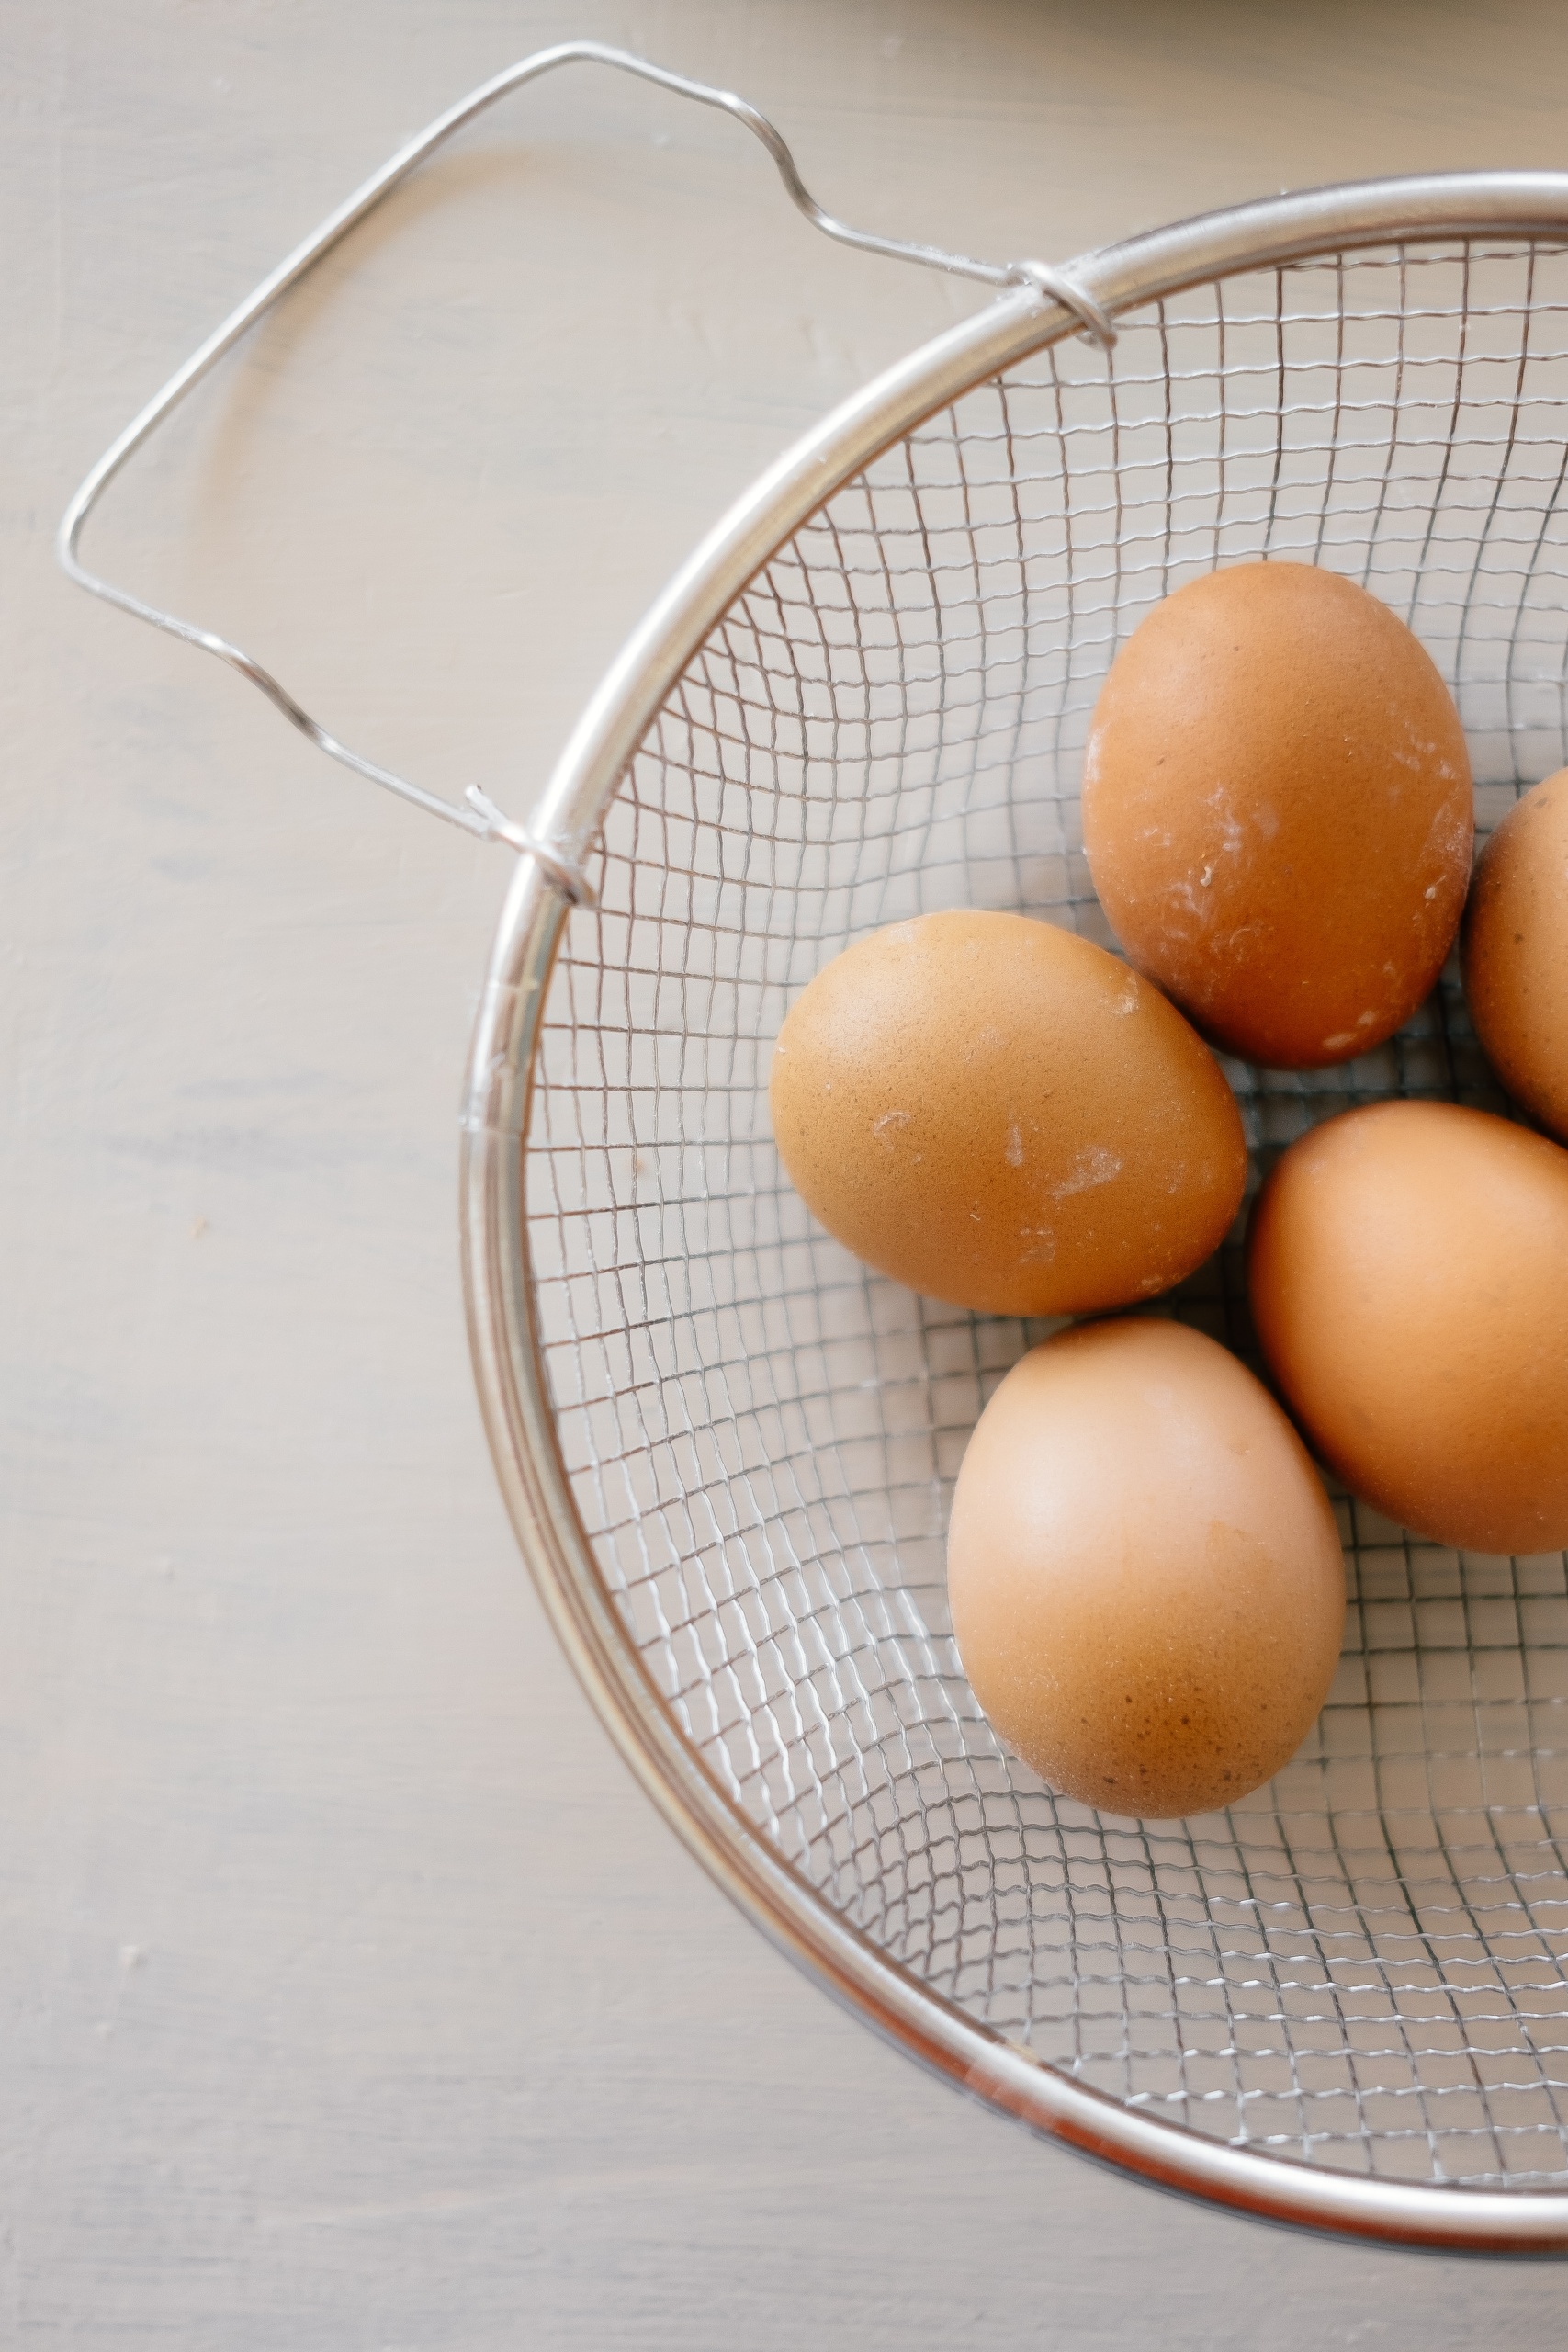 ZDRAVLJE ZA PET MINUTA! Evo zašto je dobro jesti tvrdo kuhana jaja –  @tvstudiowien